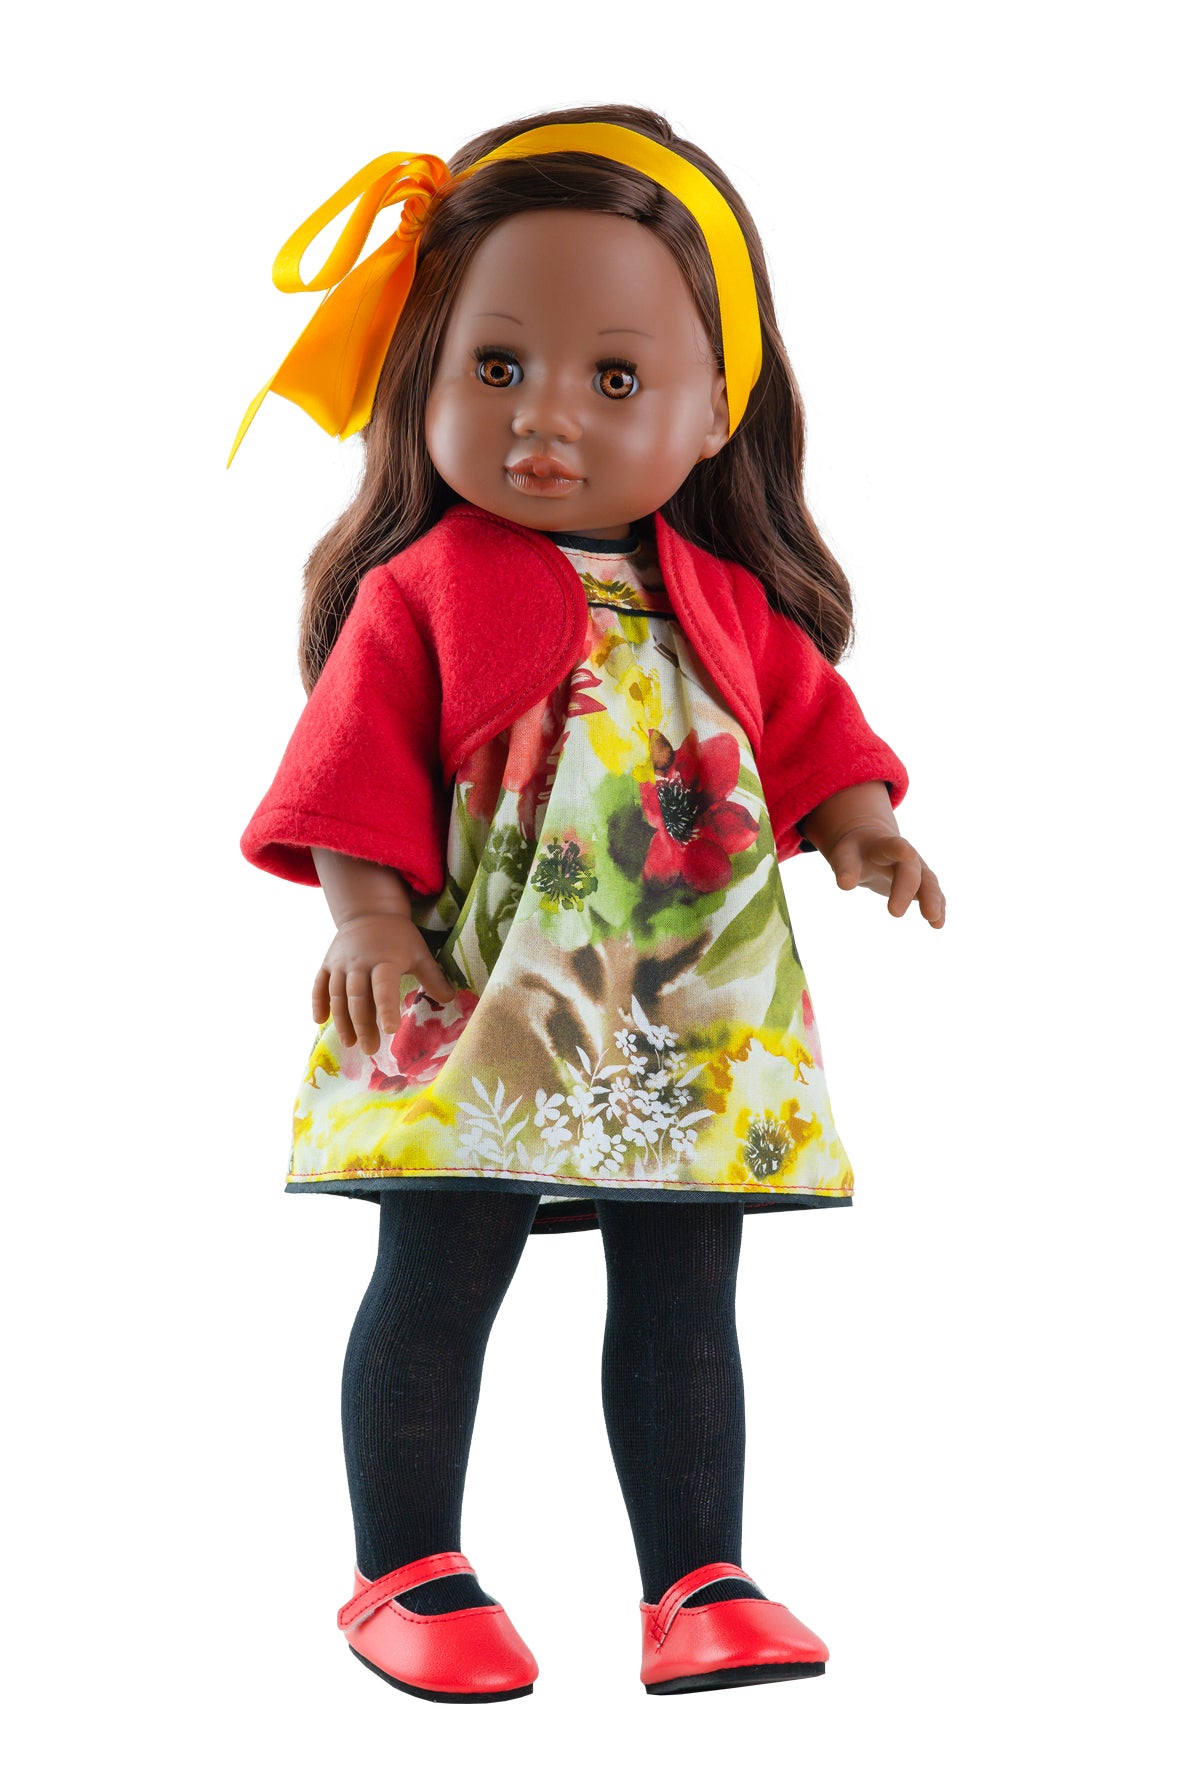 Lalka Paola Reina 42 cm, ręcznie wykonana w Hiszpanii, idealna do przytulania, czesania i przebierania; doskonała lalki dla dzieci.